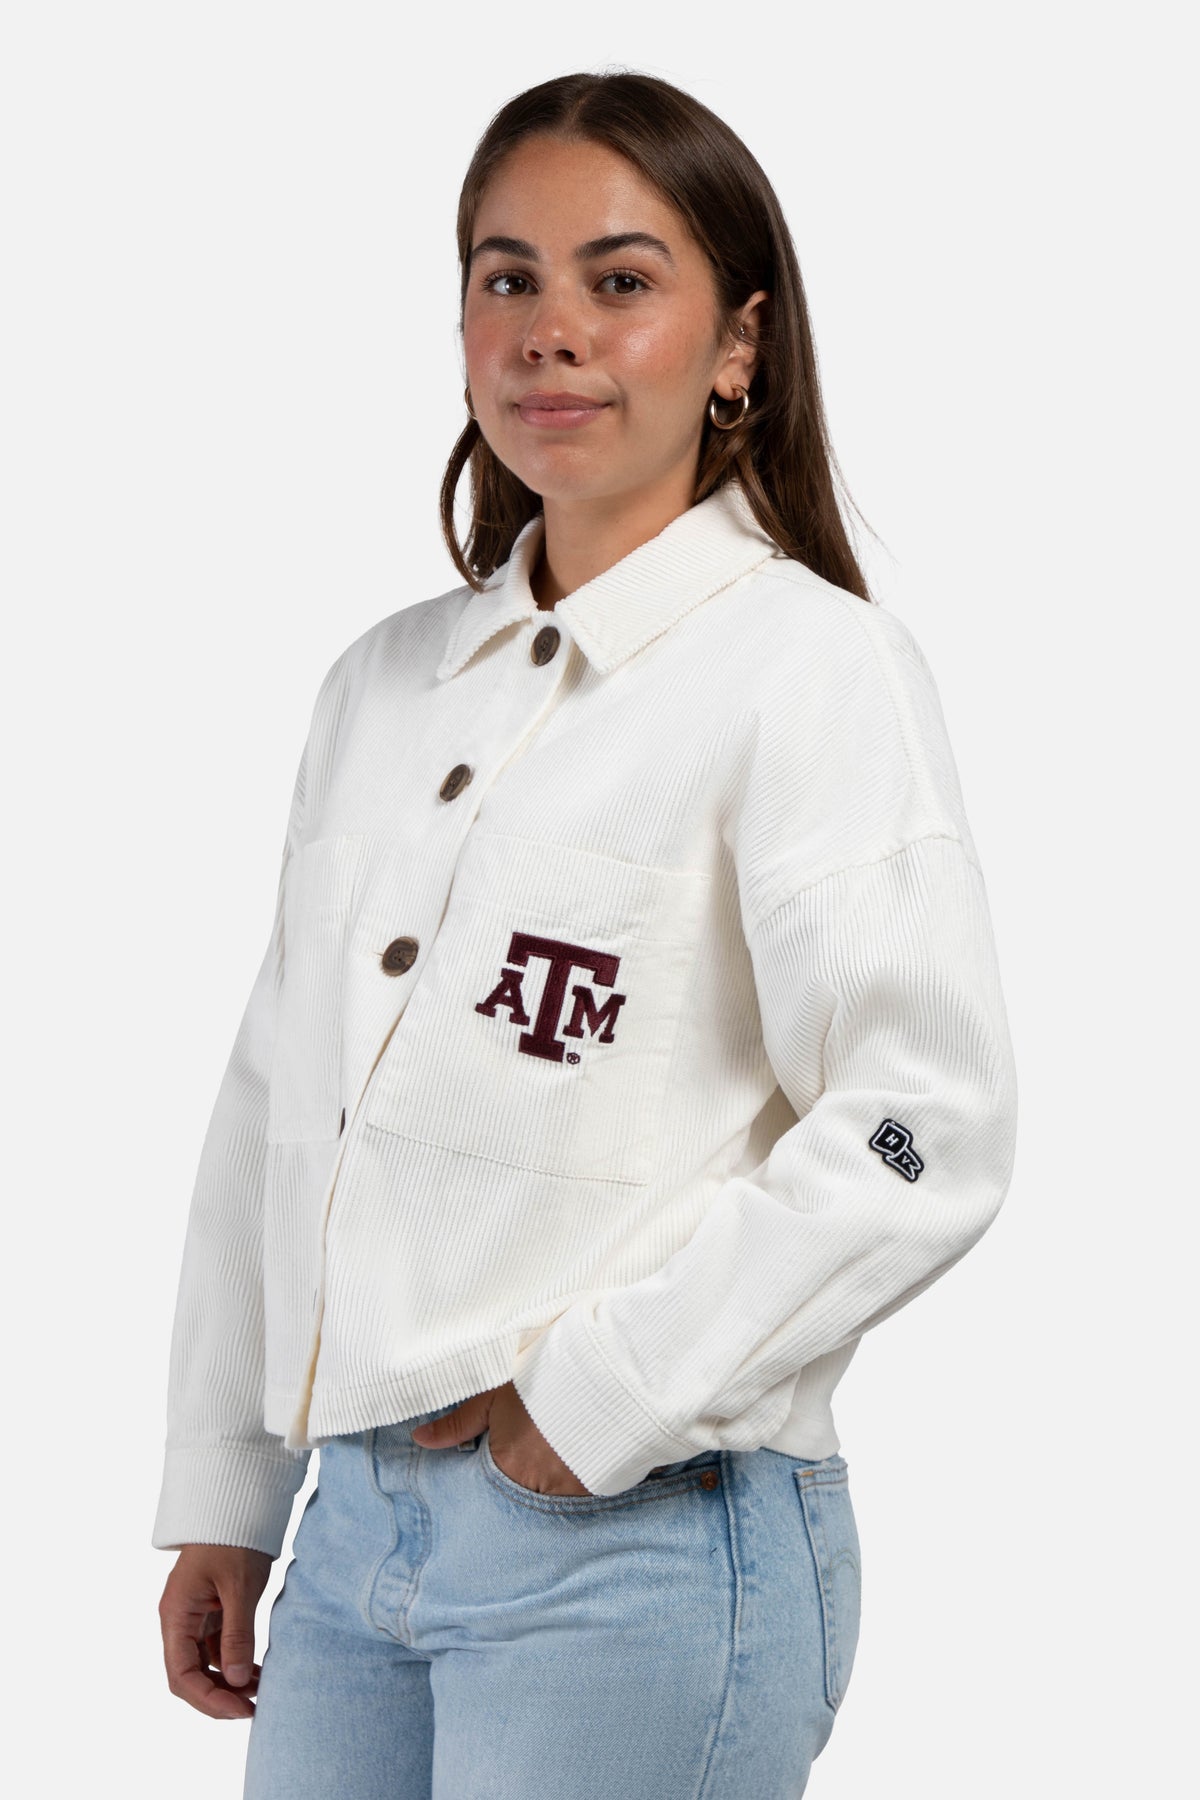 Texas A&M University Corded Jacket